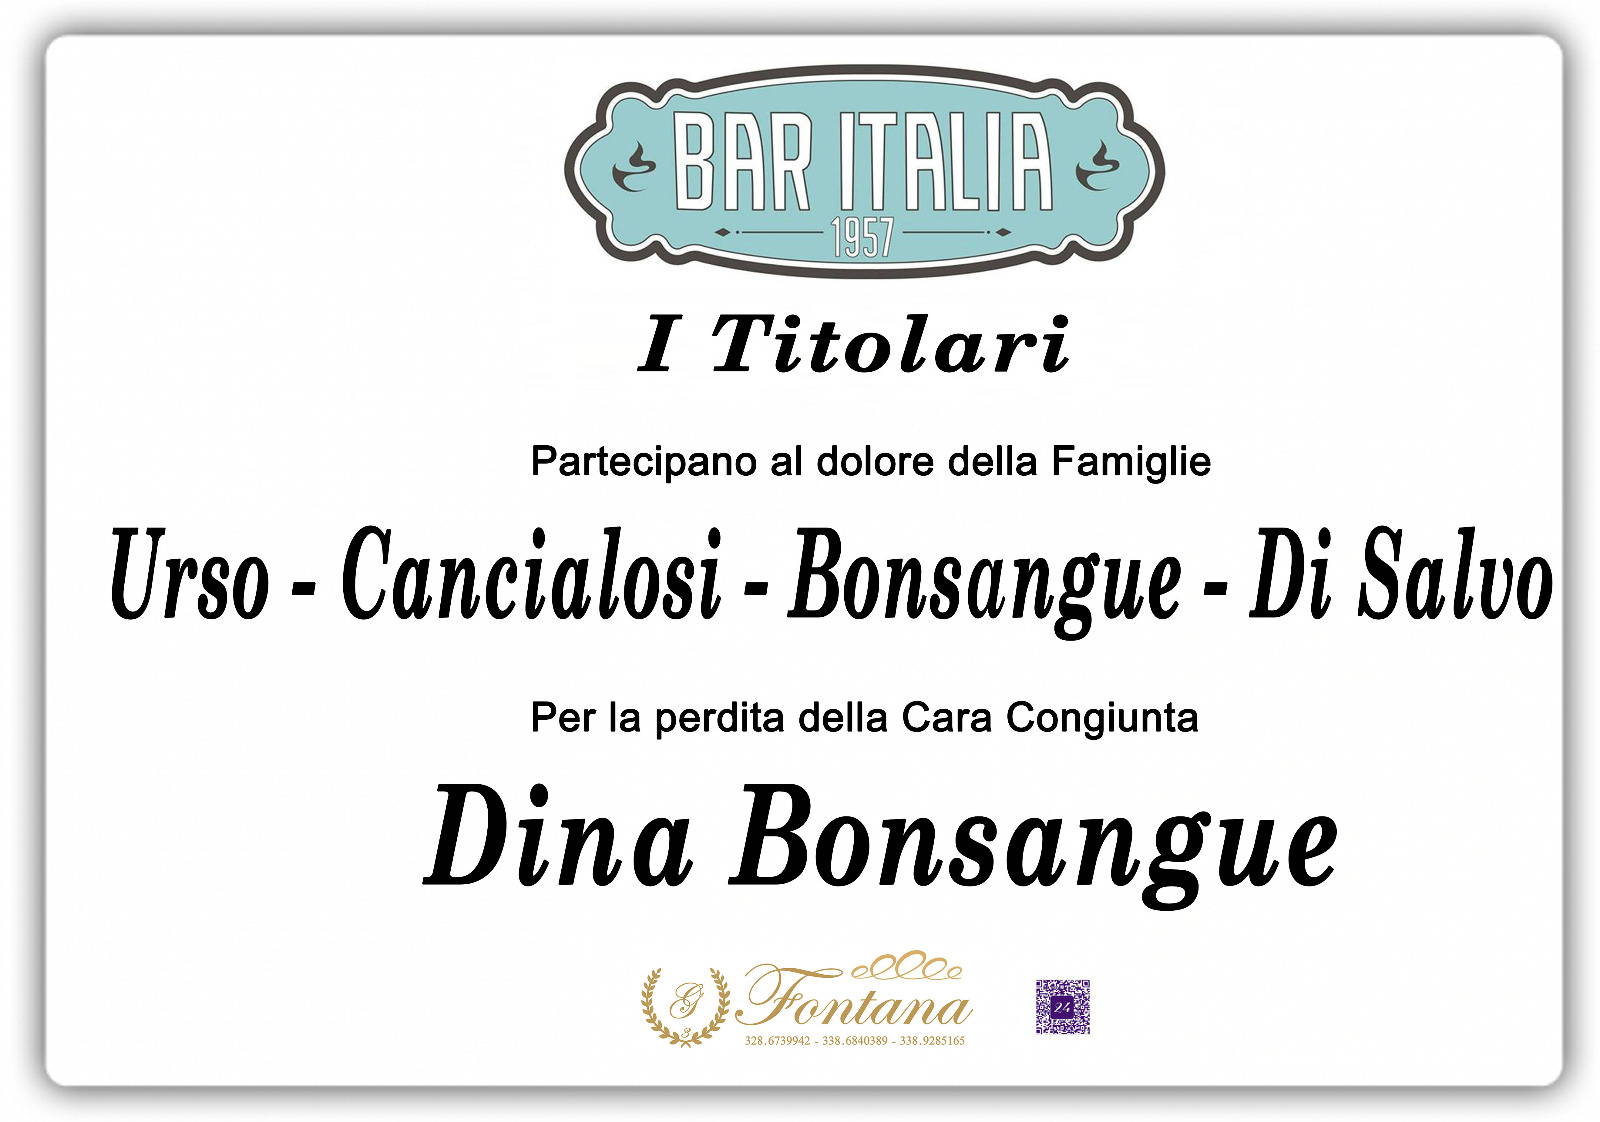 I titolari del Bar Italia dal 1957 - Canicattì